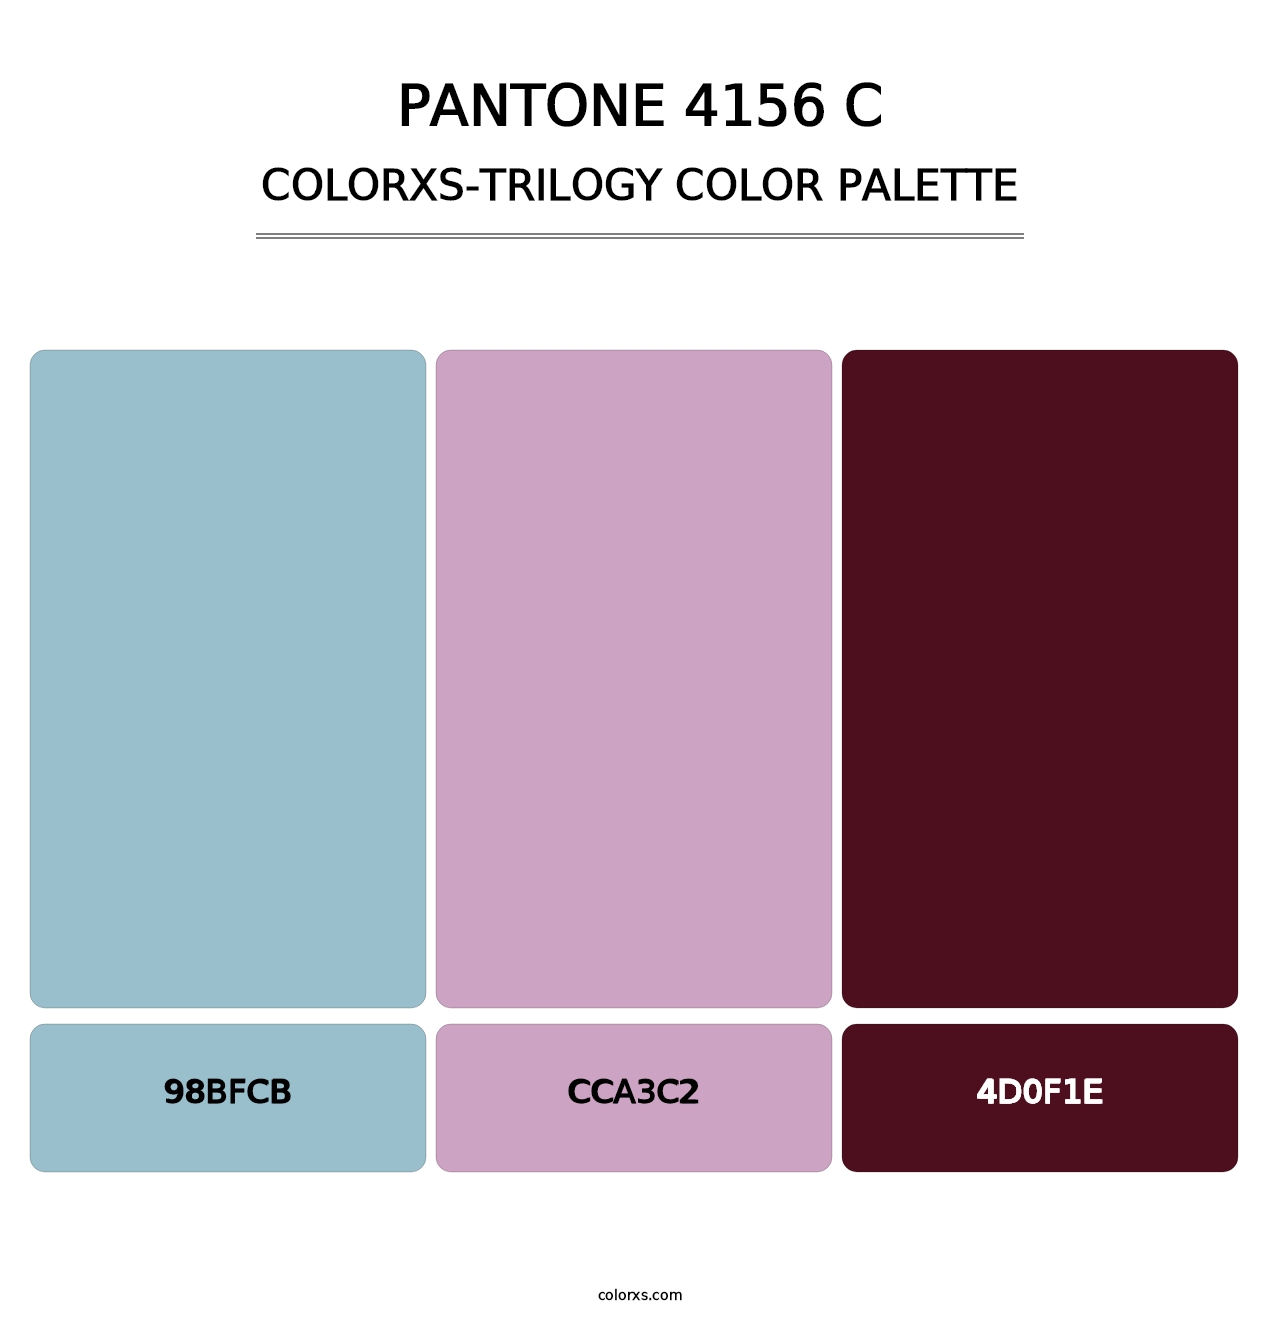 PANTONE 4156 C - Colorxs Trilogy Palette